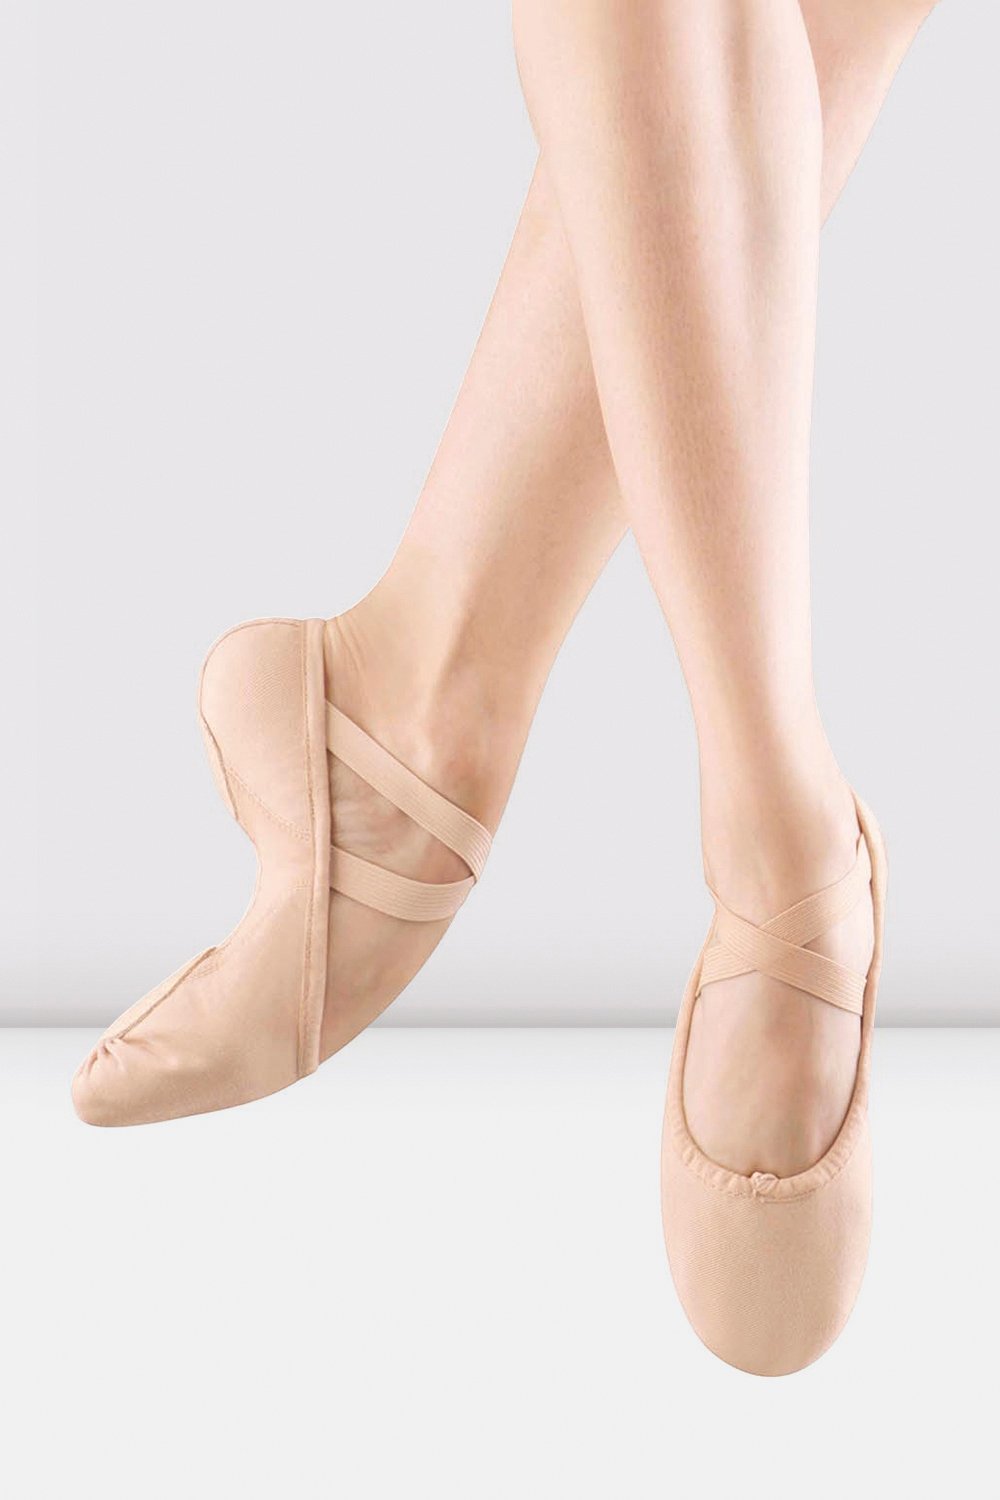 Women's Ballet – Dancer's Image